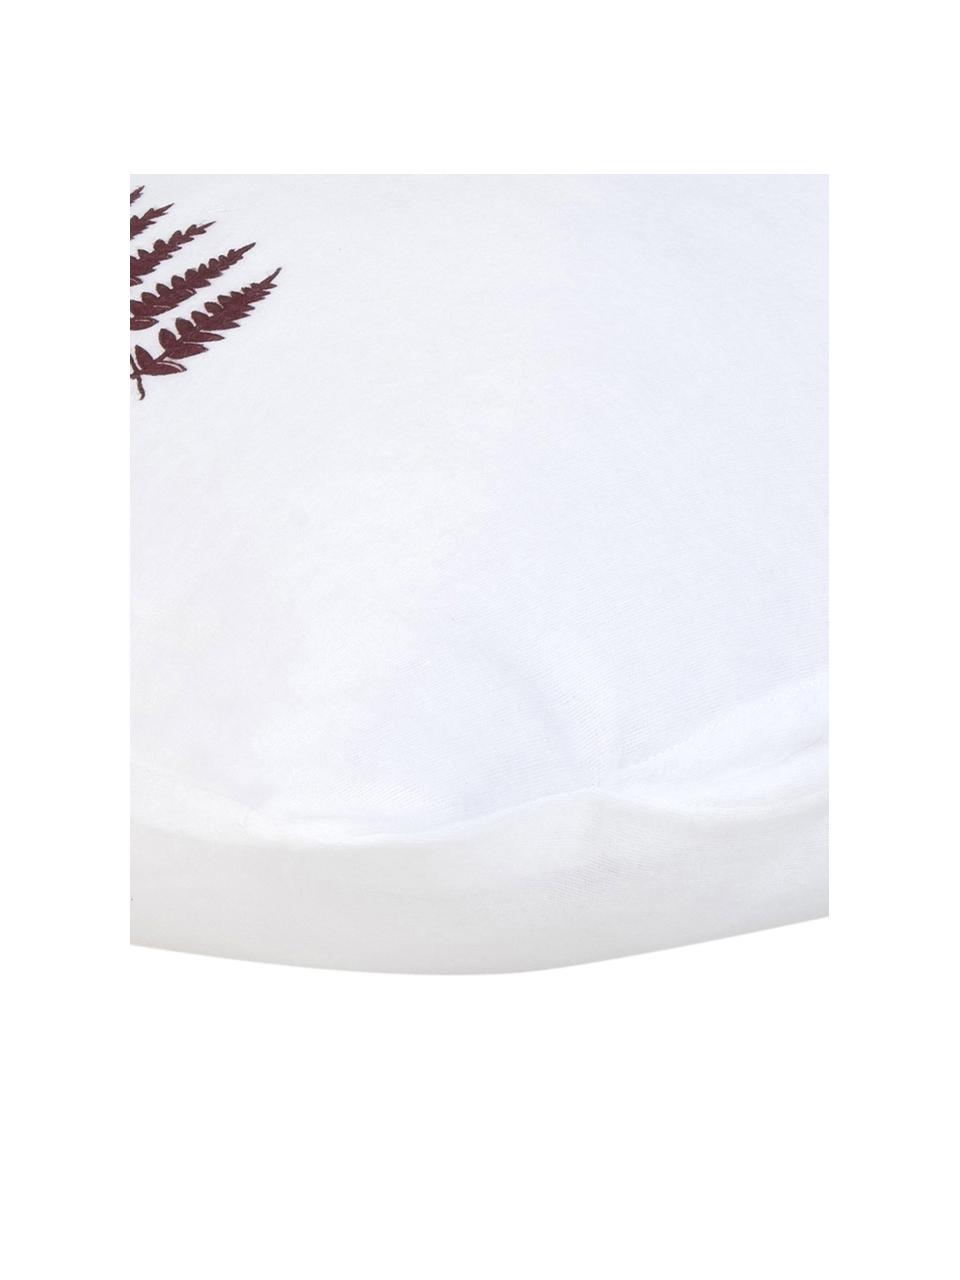 Flanell-Kopfkissenbezüge Fraser mit winterlichem Blattmuster, 2 Stück, Webart: Flanell, Weiß, B 40 x L 80 cm